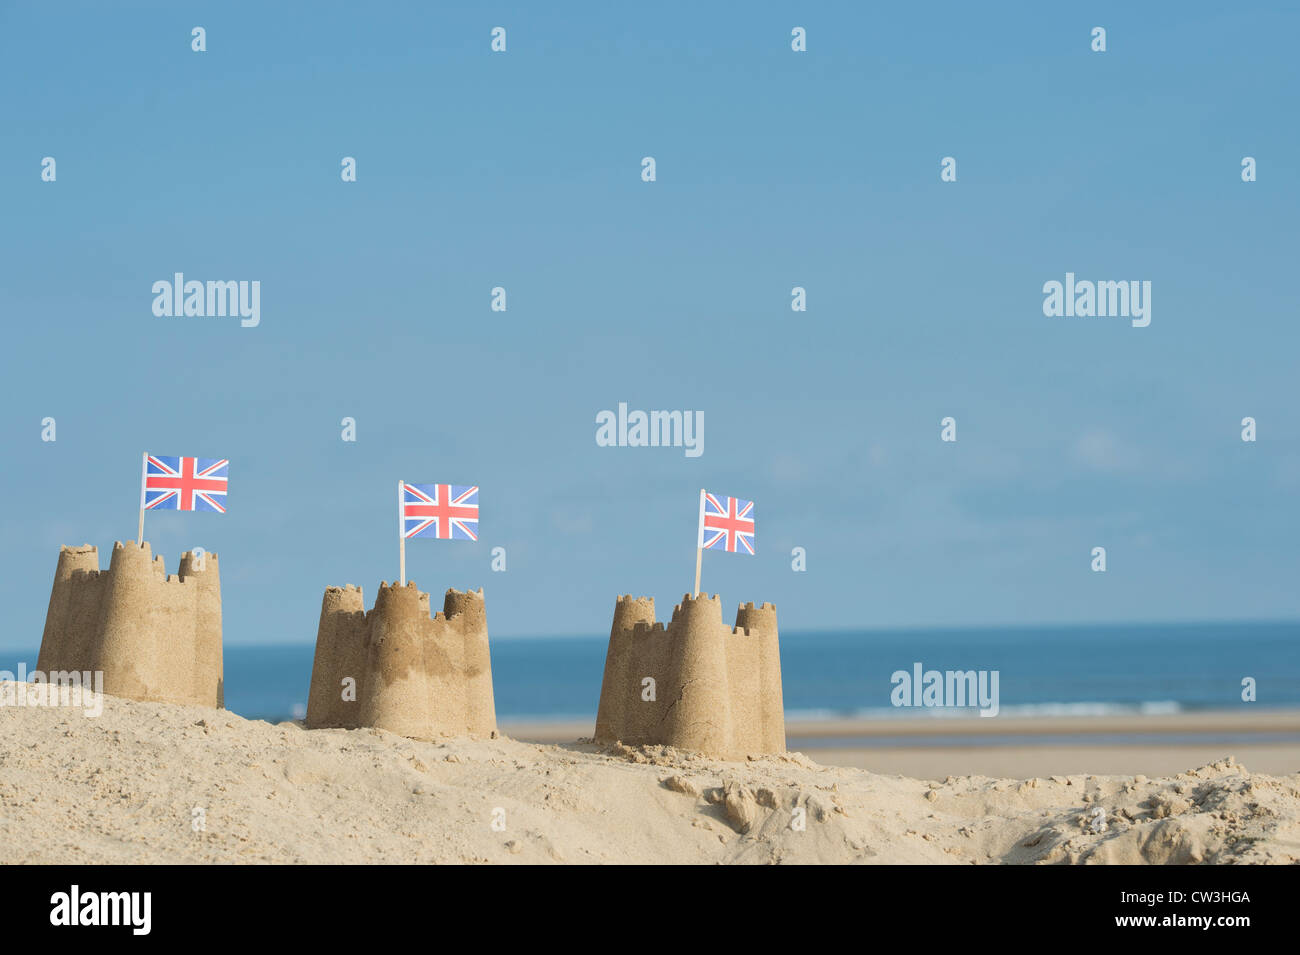 Union Jack-Flaggen in Sandburgen auf einer Sanddüne. Brunnen neben das Meer. Norfolk, England Stockfoto